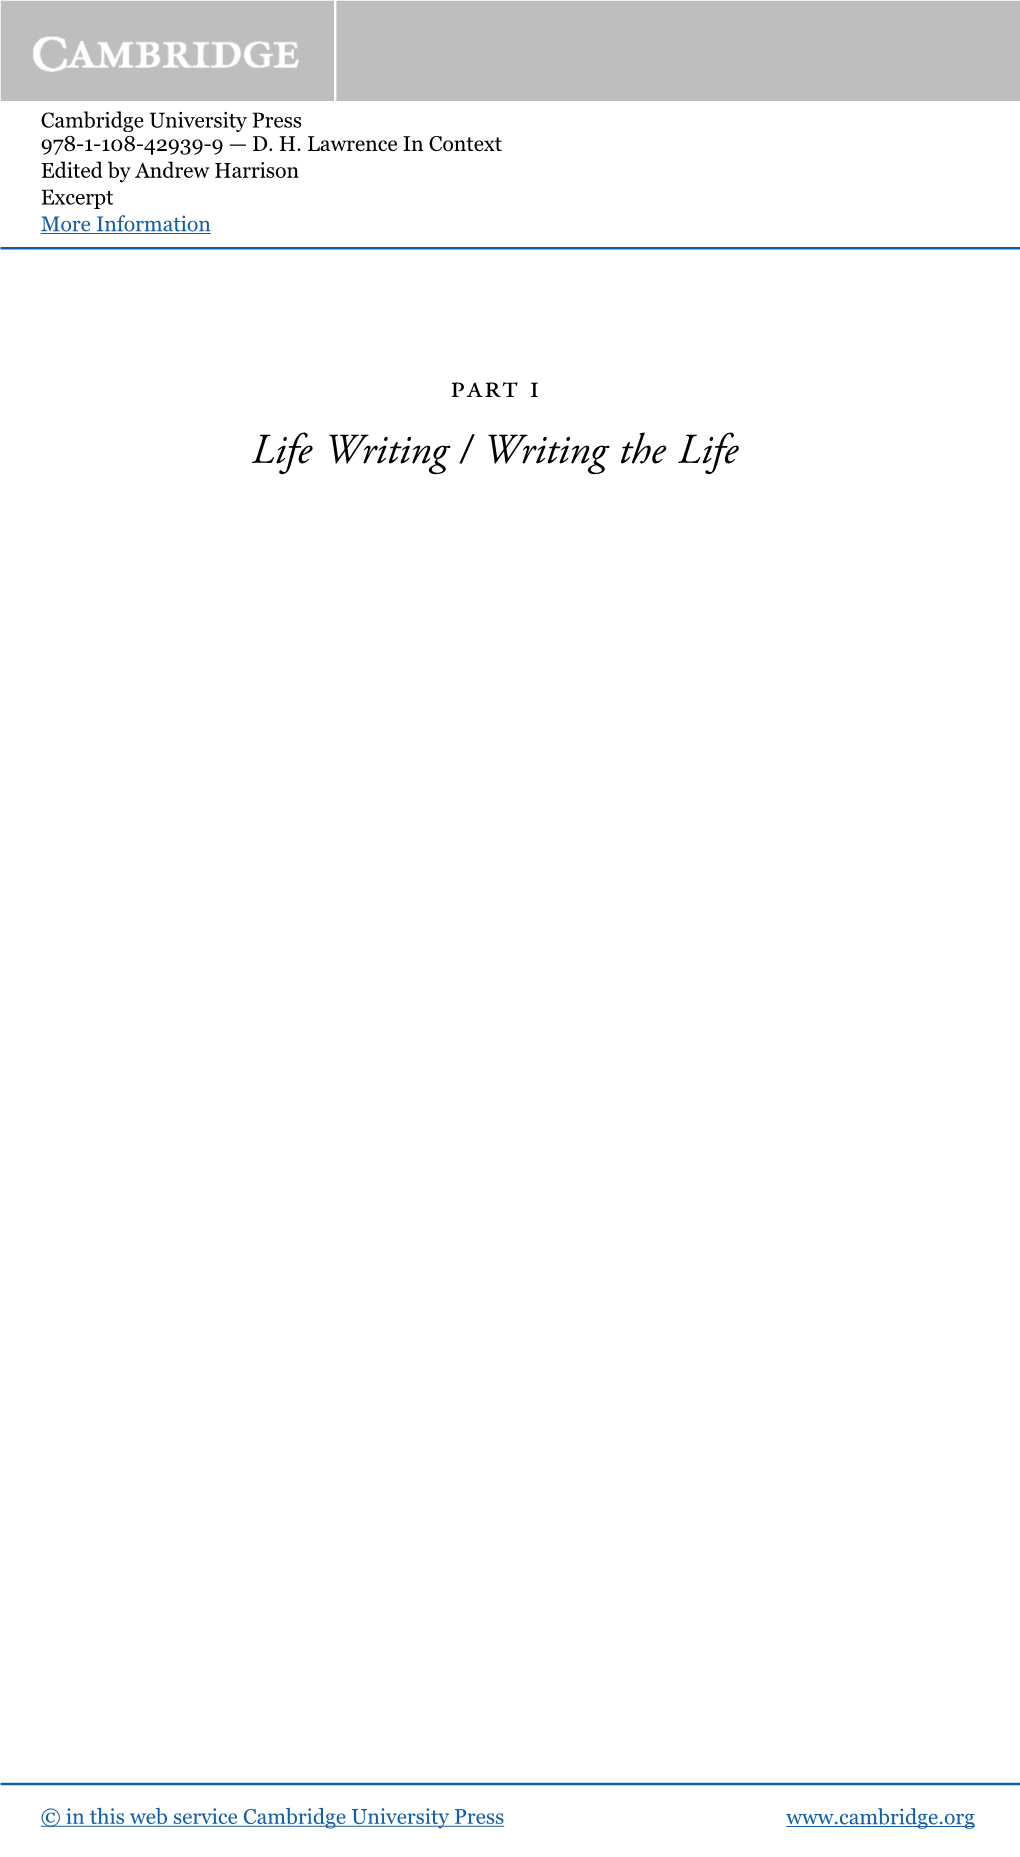 Life Writing / Writing the Life